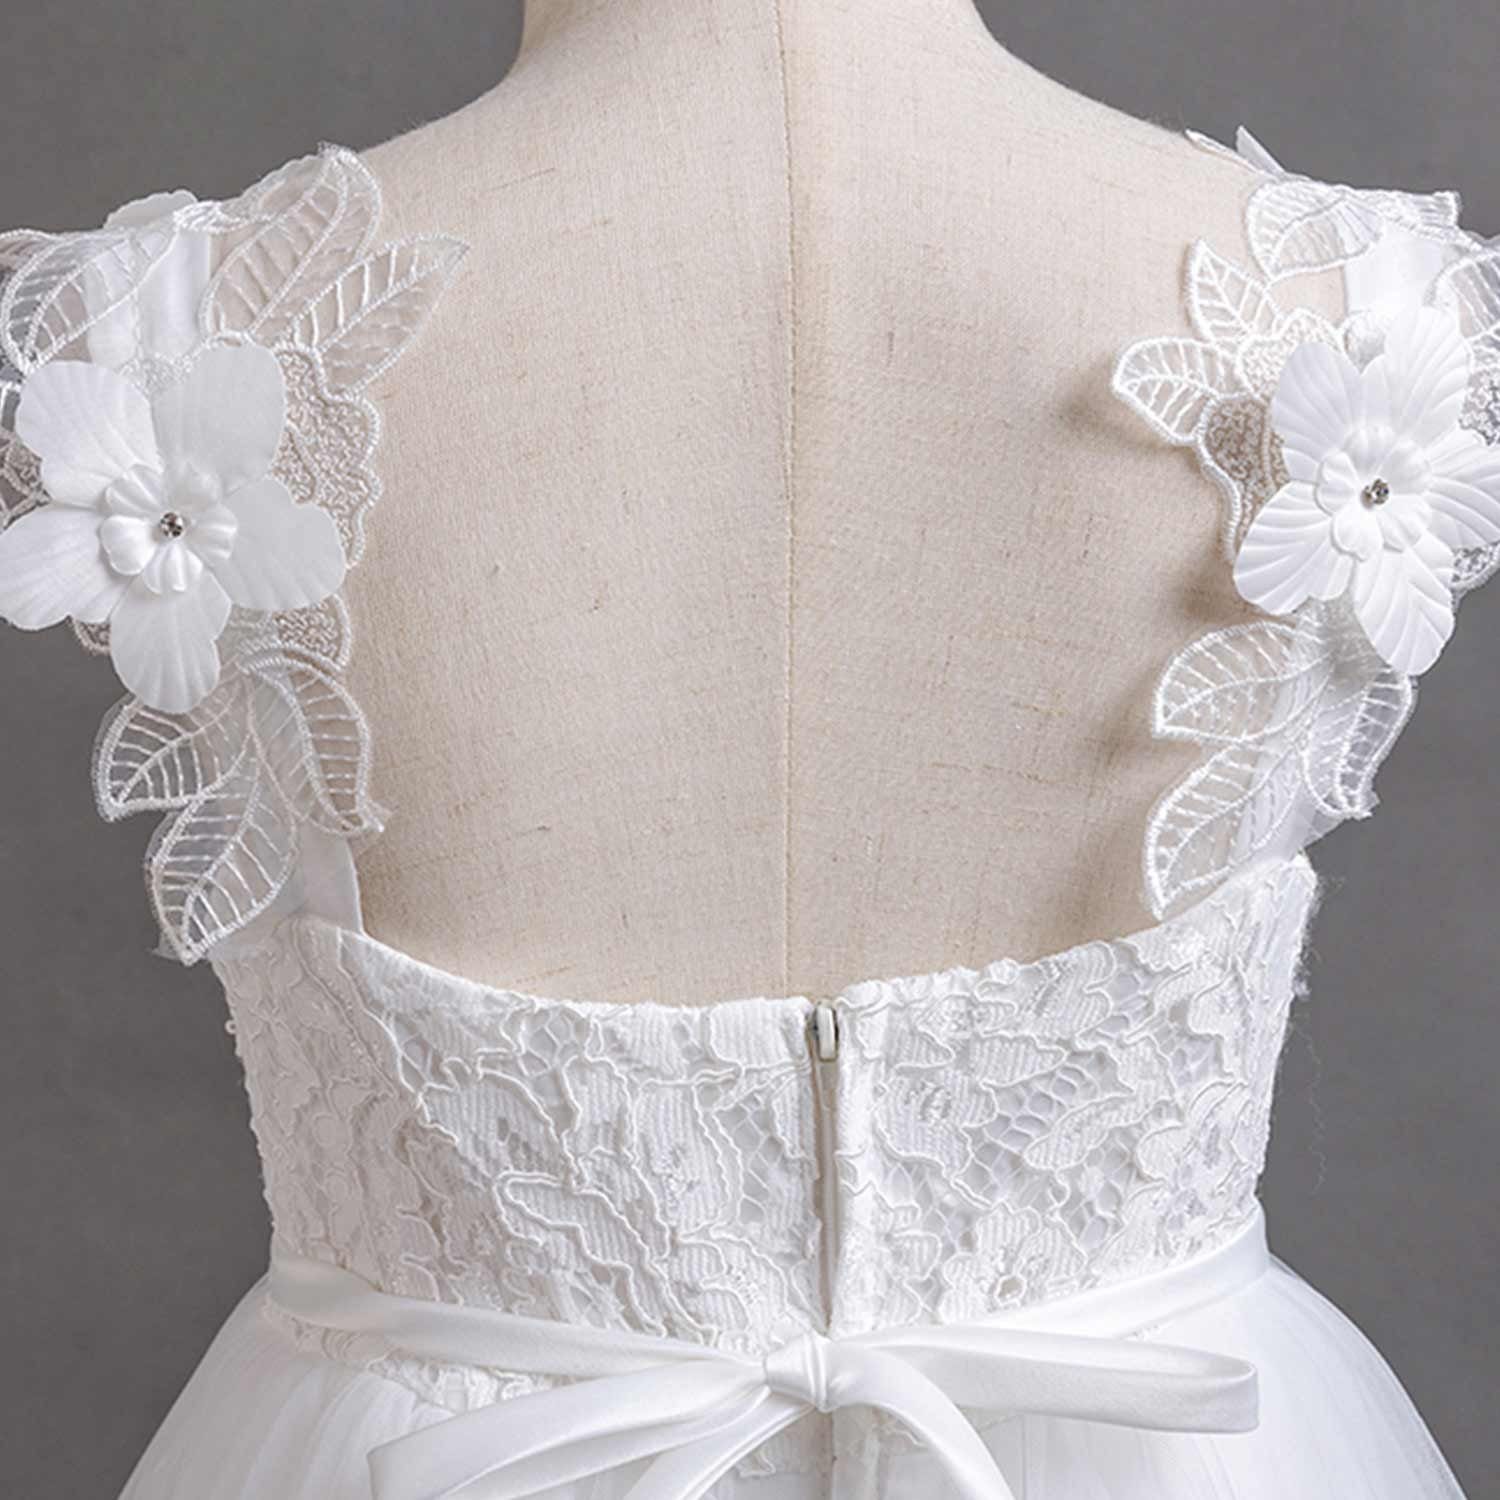 Abendkleid Daisred Blumenmädchen Tüllkleider Abendkleider Weiß Prinzessinnenkleider